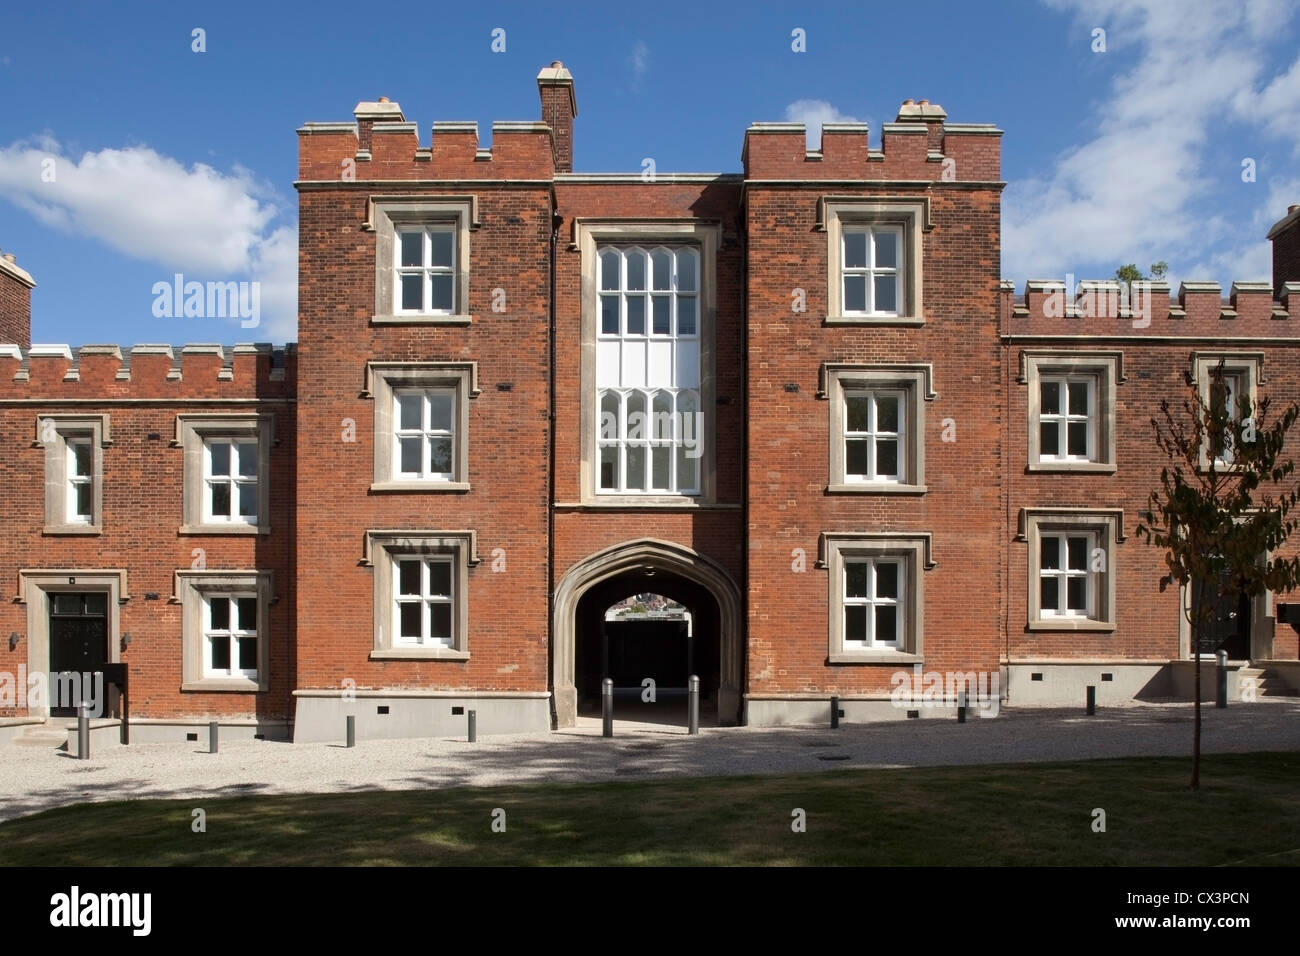 Real Academia Militar, Londres, Reino Unido. Arquitecto: John McAslan & Partners, 2012. Vista de la parte renovada de la academia. Foto de stock